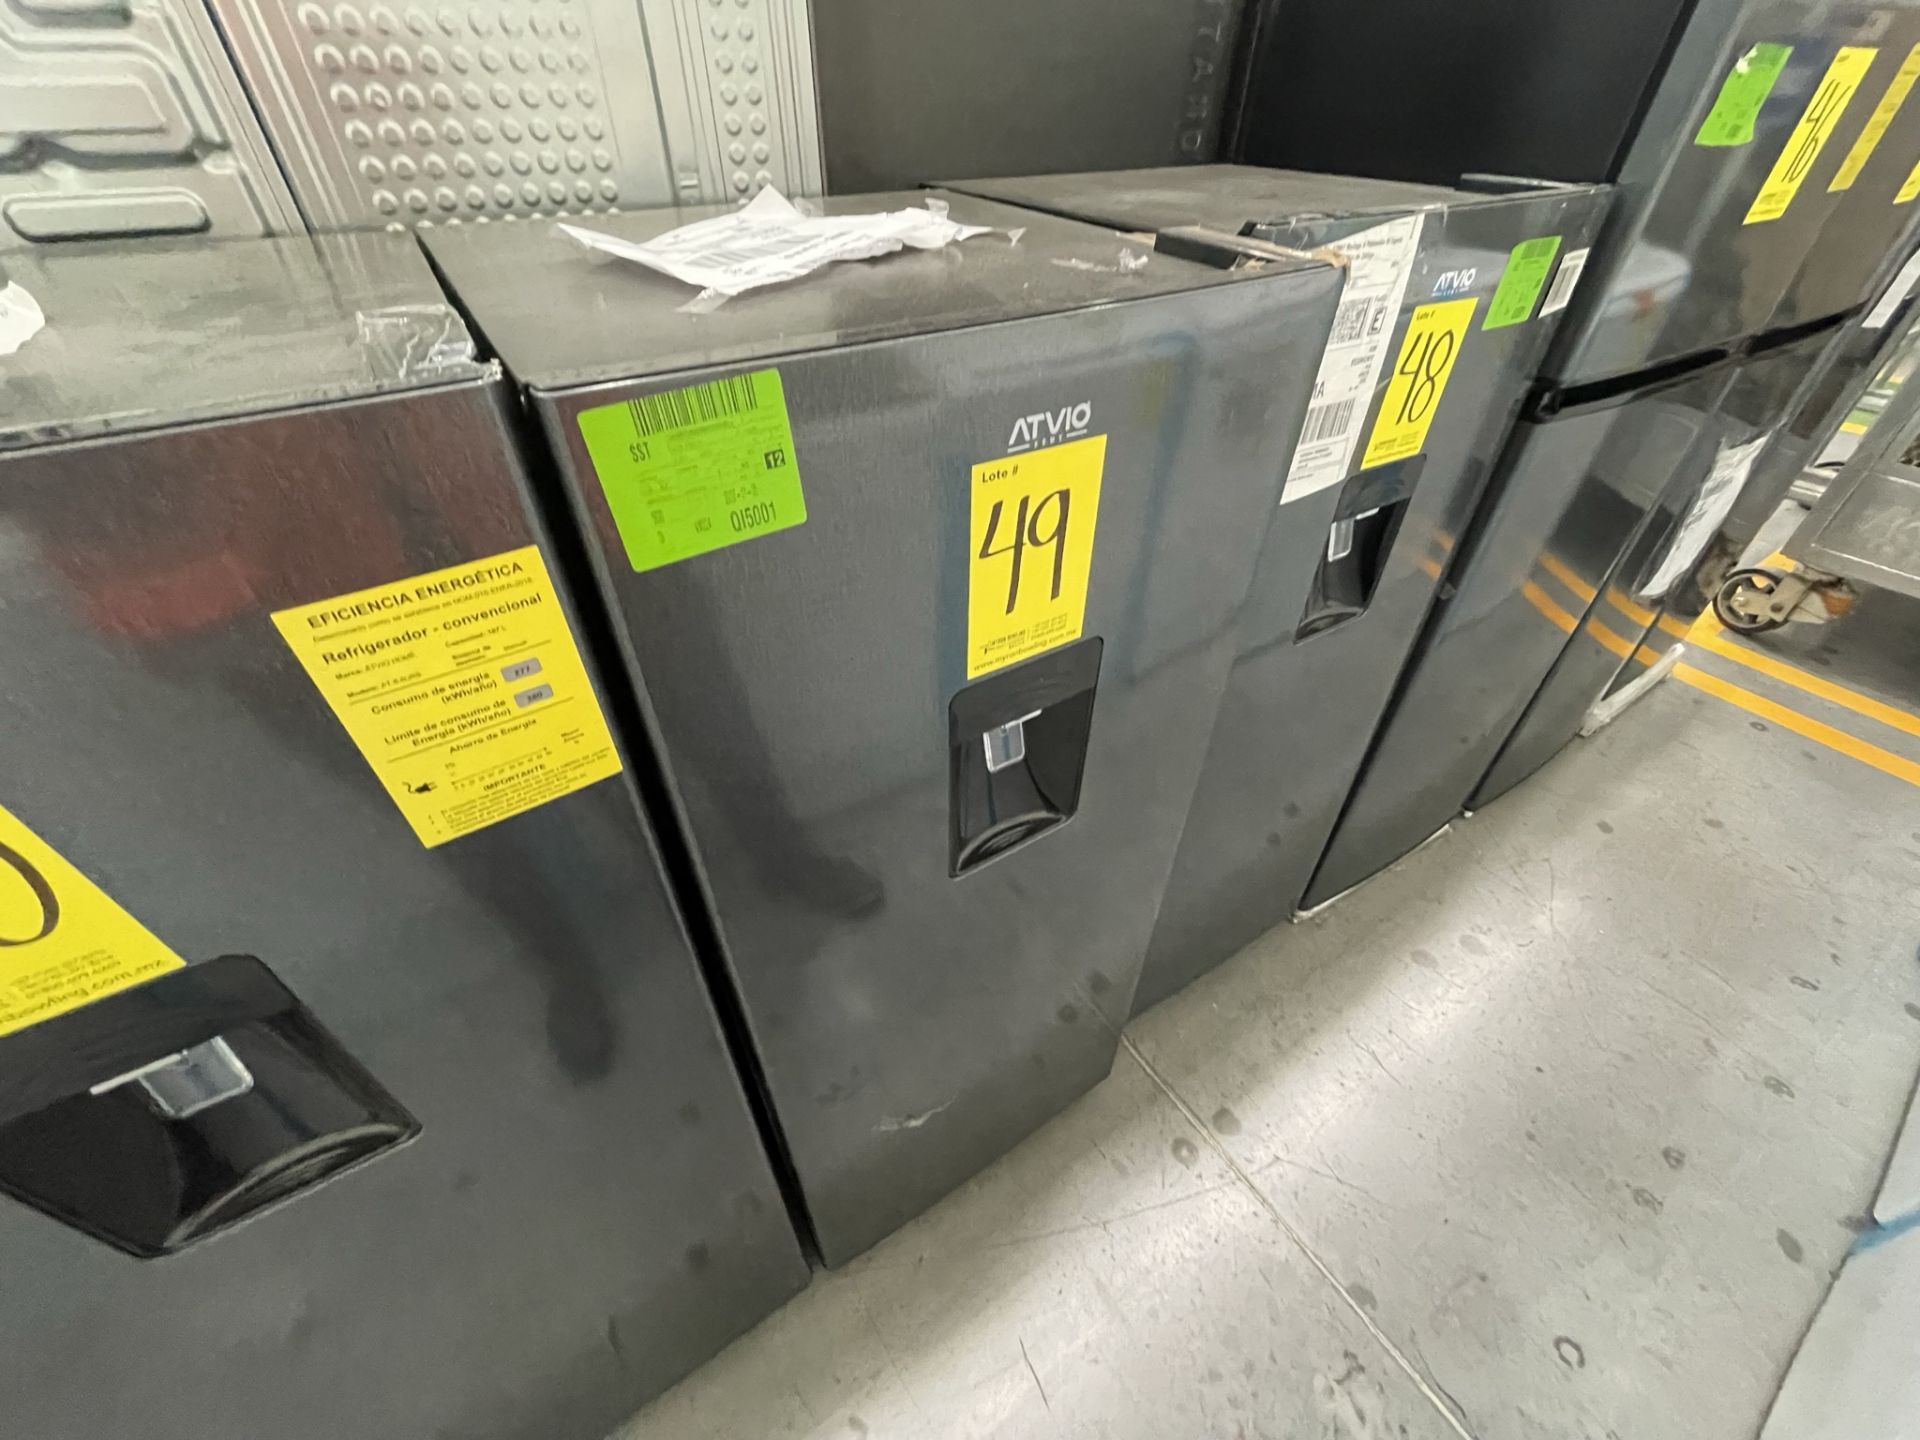 Lote de 2 Refrigeradores contiene: 1 Refrigerador Marca WINIA, Modelo DRF25210GN, Serie 370028, Col - Image 25 of 28